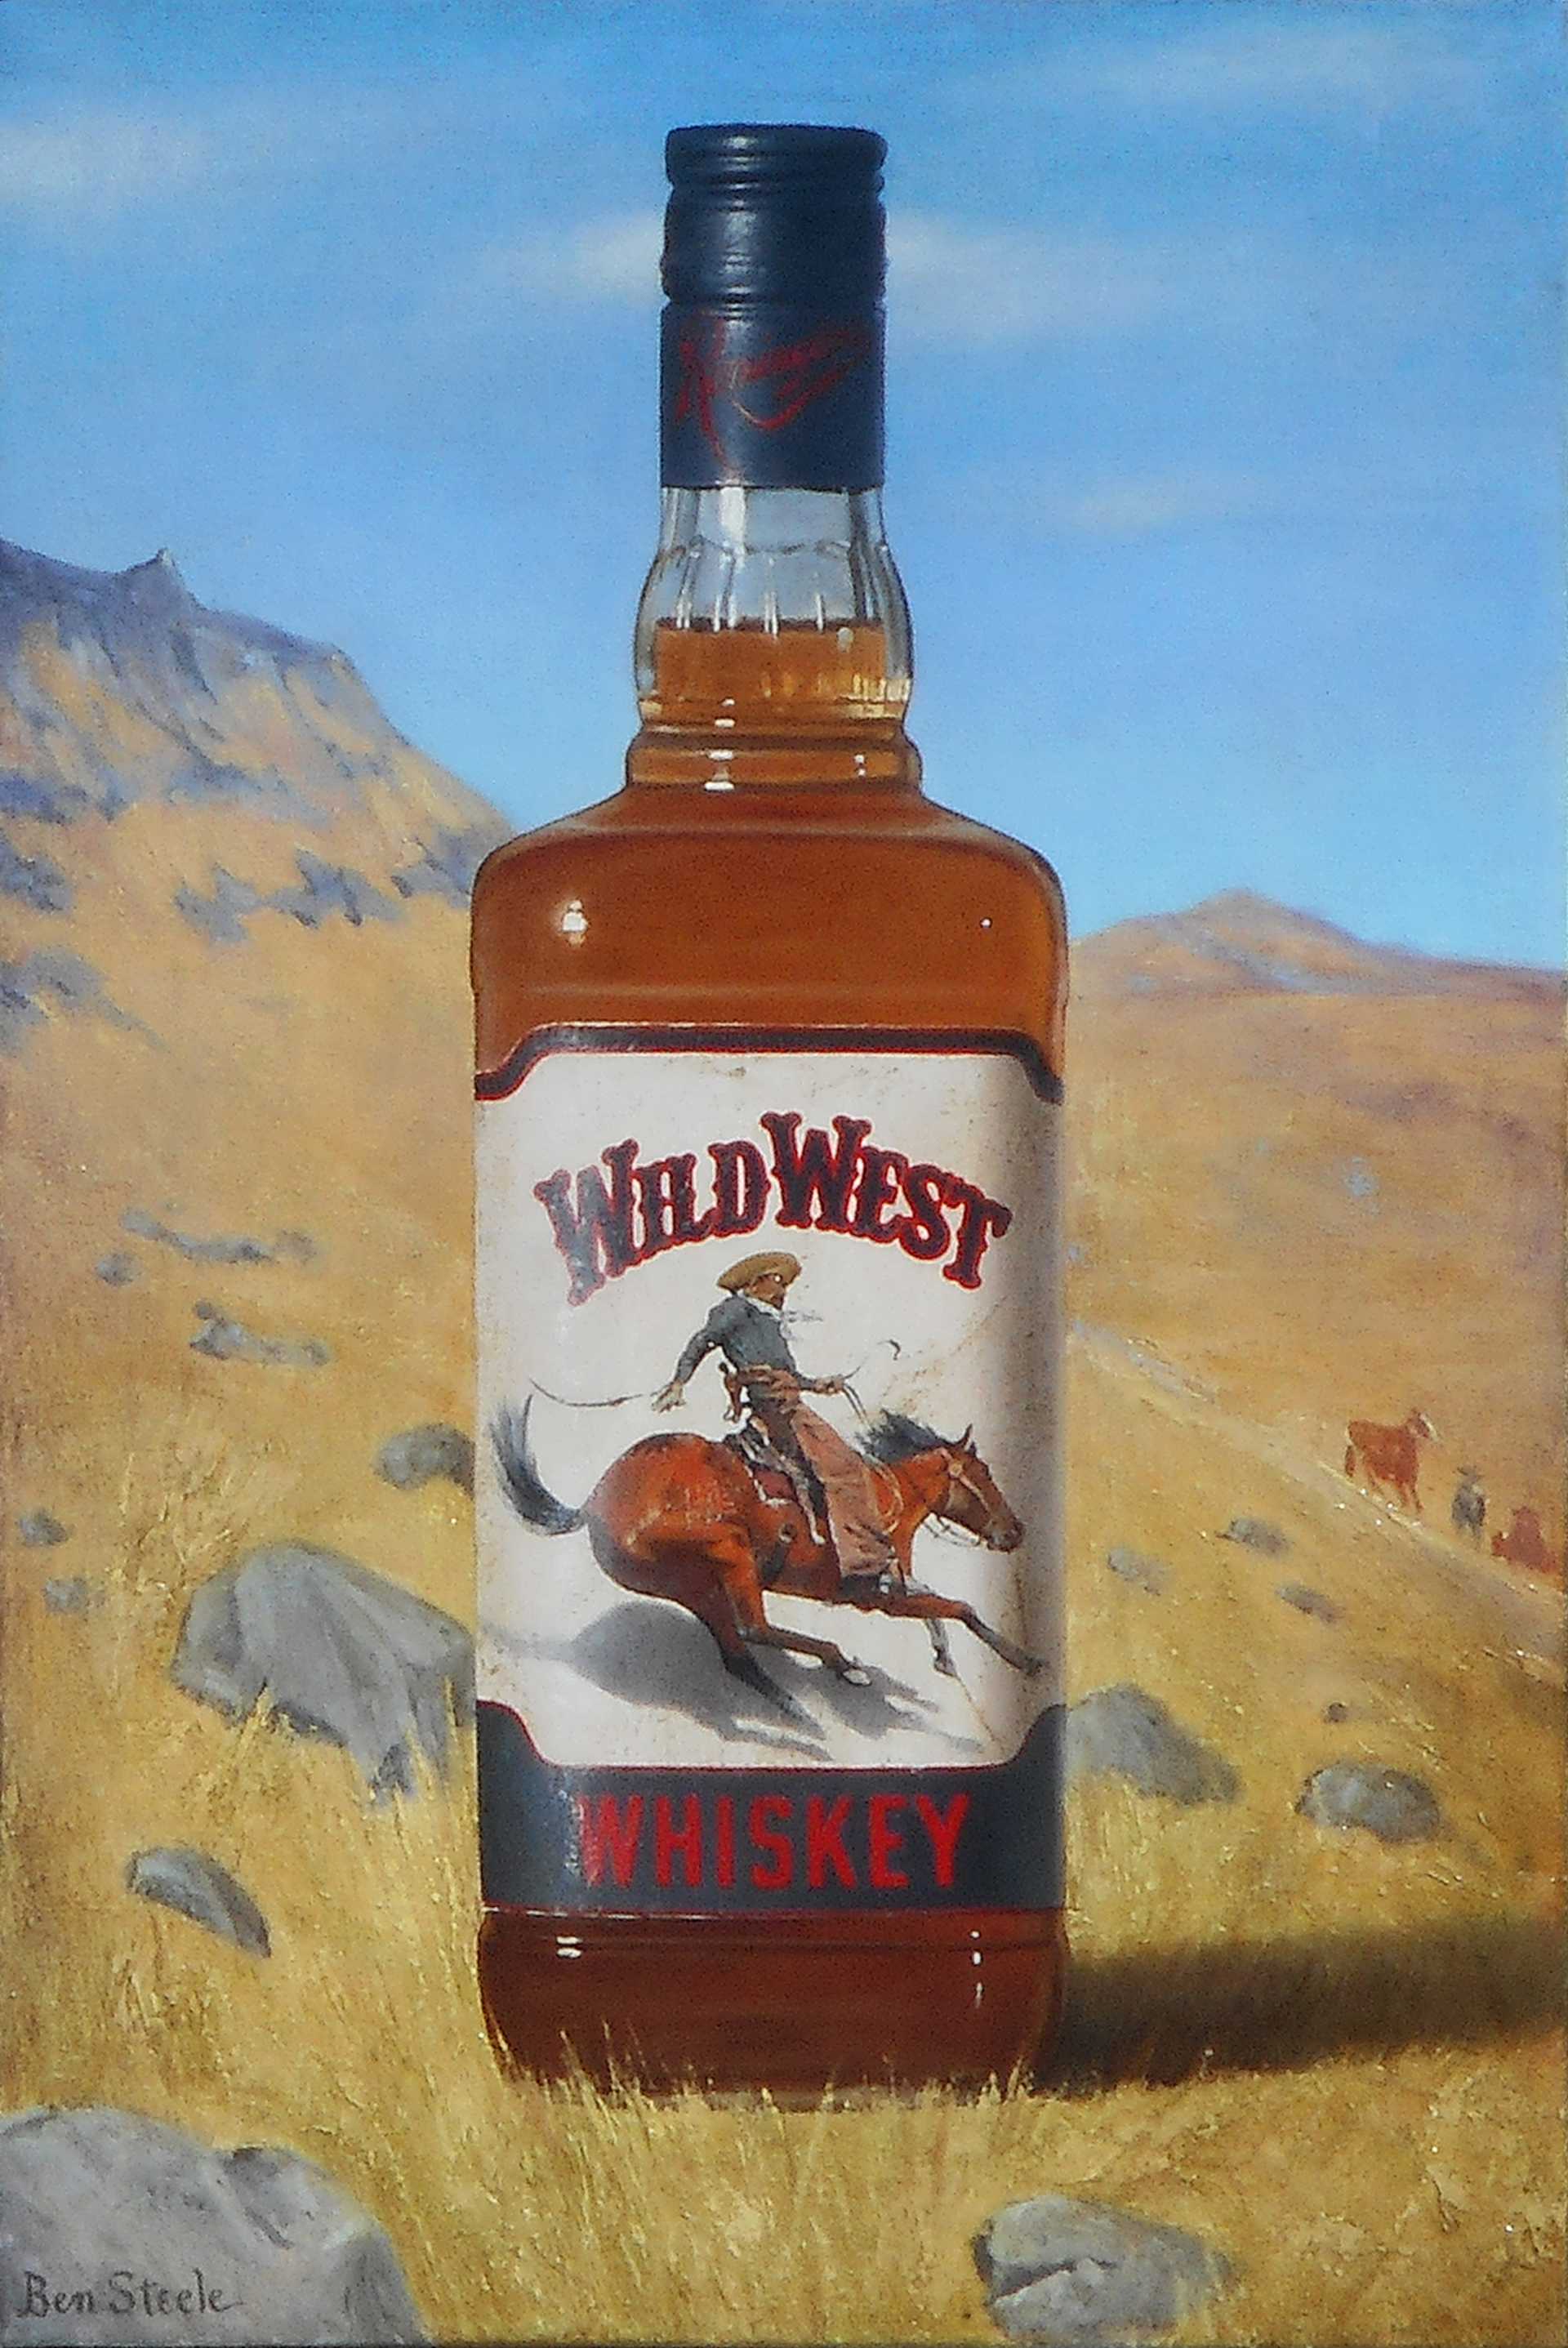 Wild West Whiskey by Ben Steele